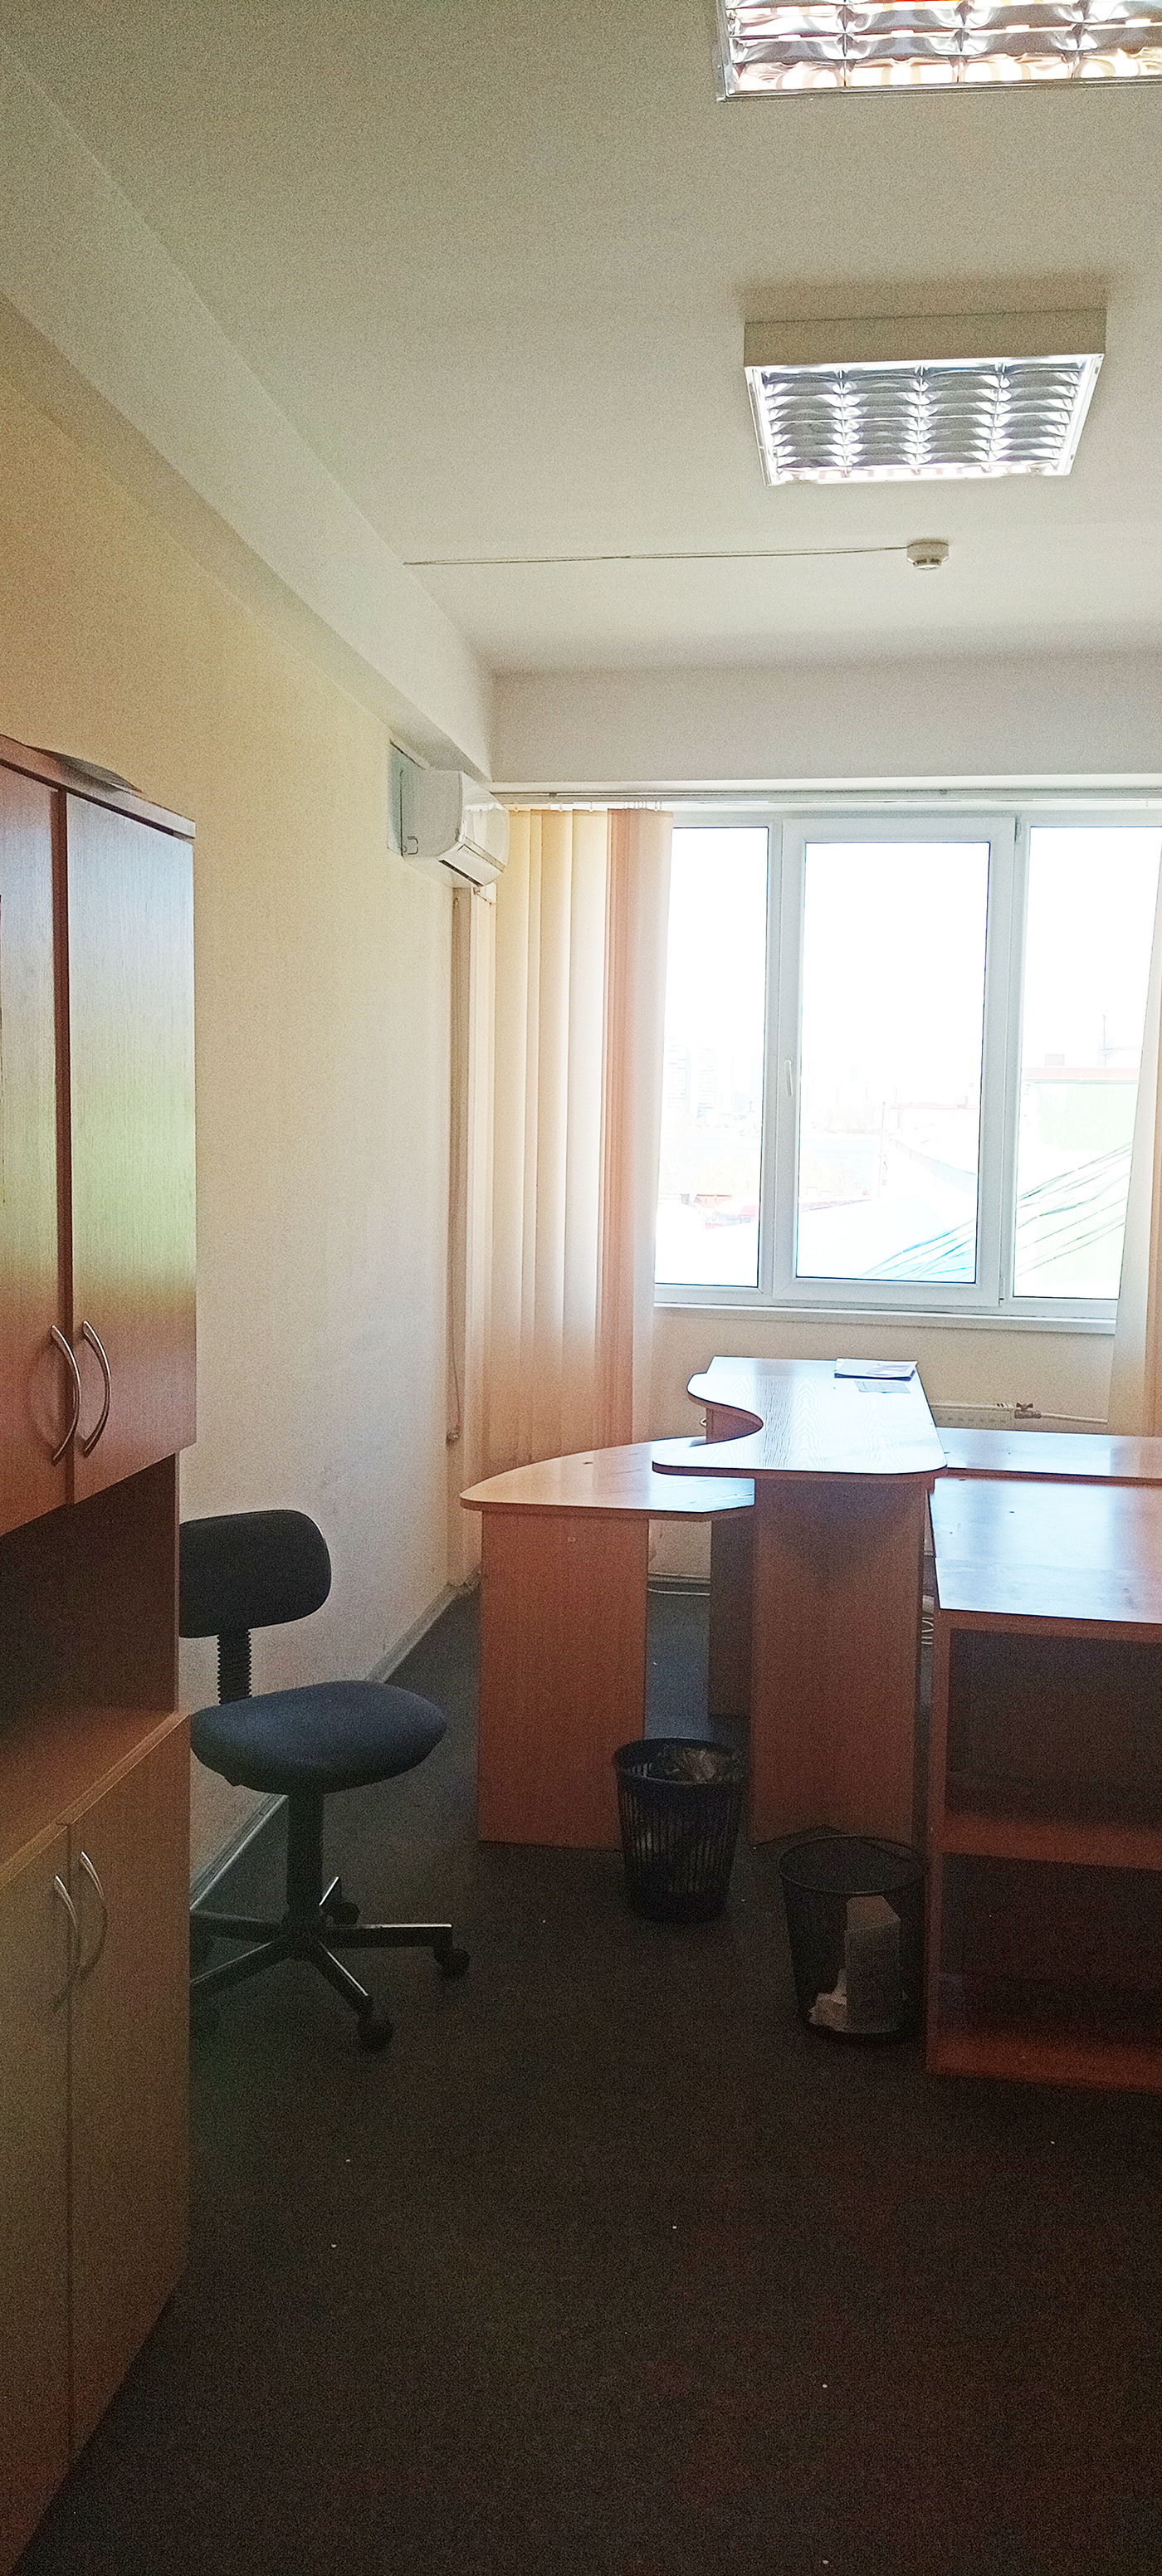  Офис, W-7272324, Коллекторная, Киев - Фото 4